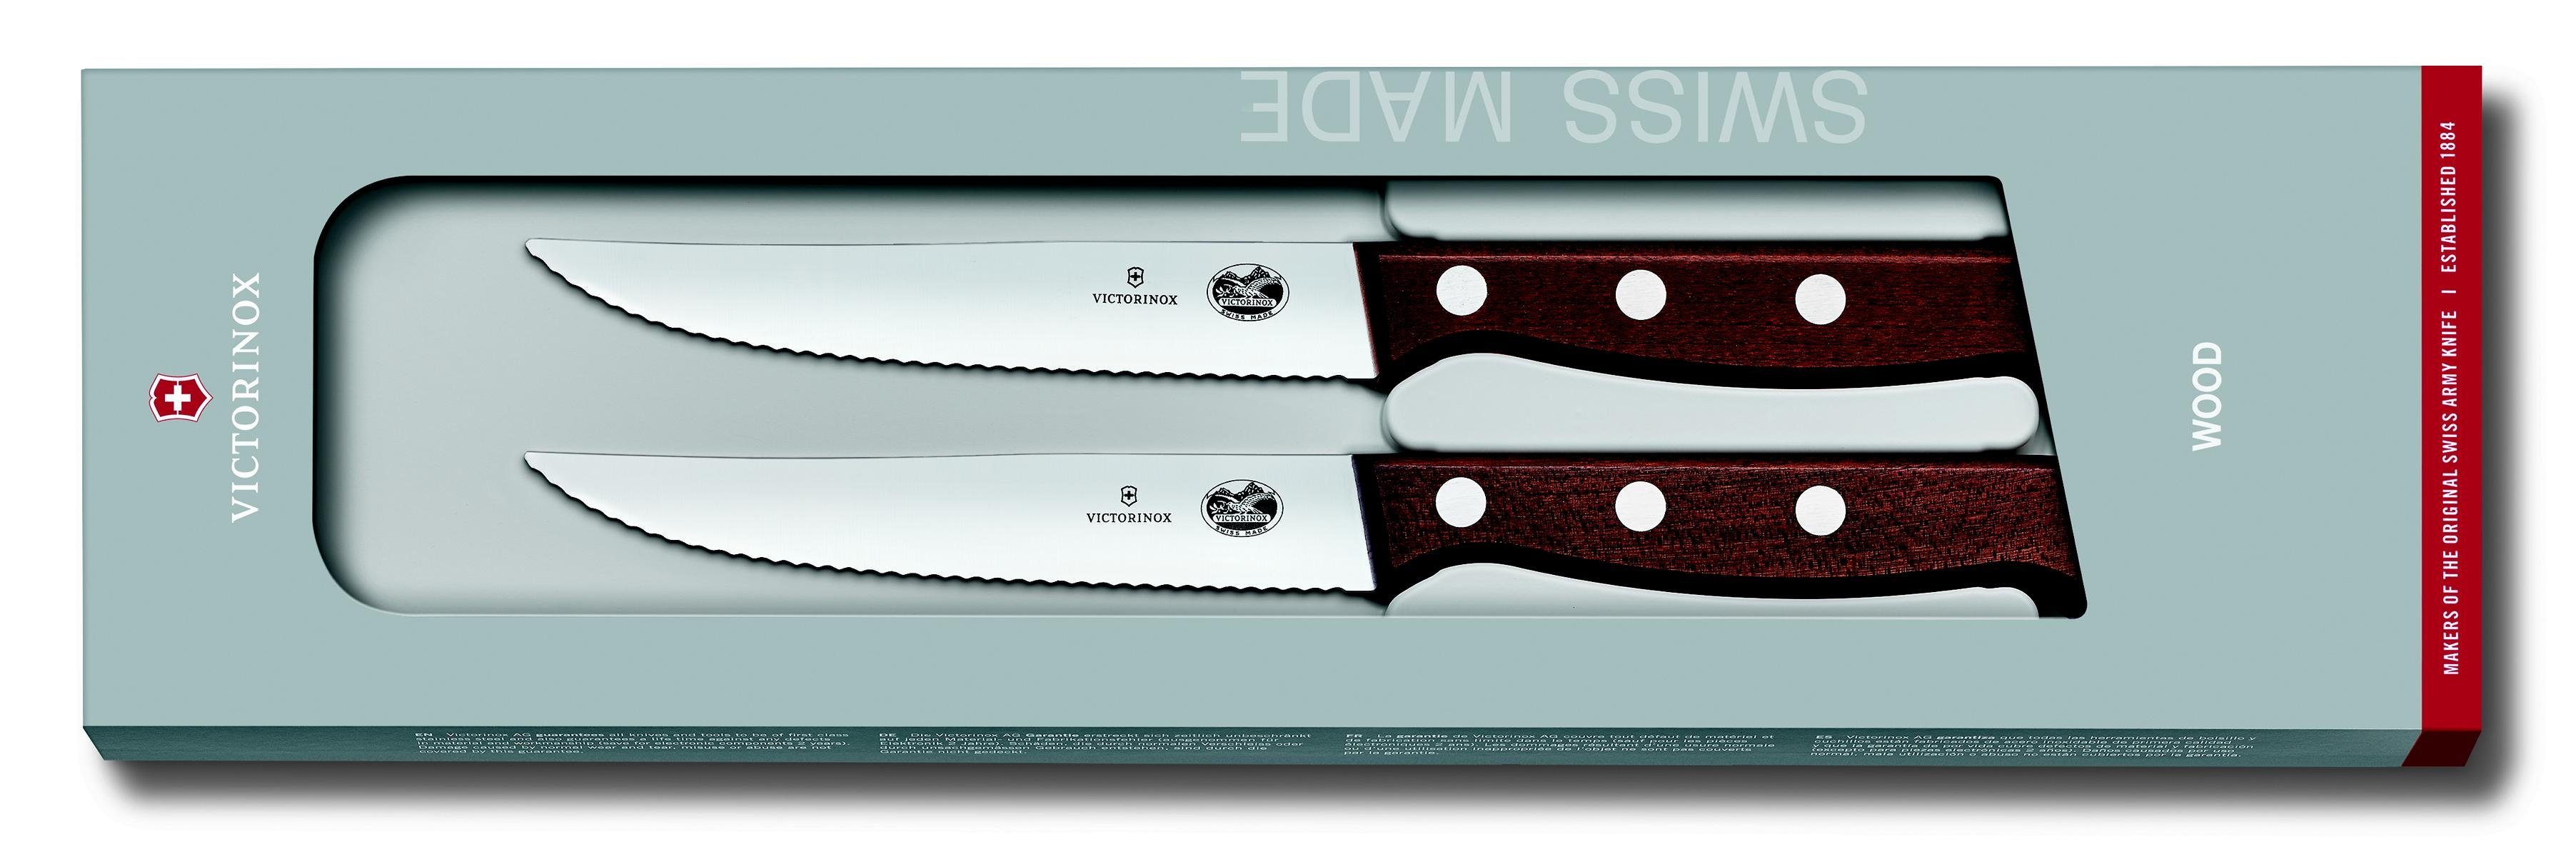 Steakmesser-Set, Taschenmesser 2-teilig mod 12 cm, Ahornholz,Wellenschliff, Victorinox